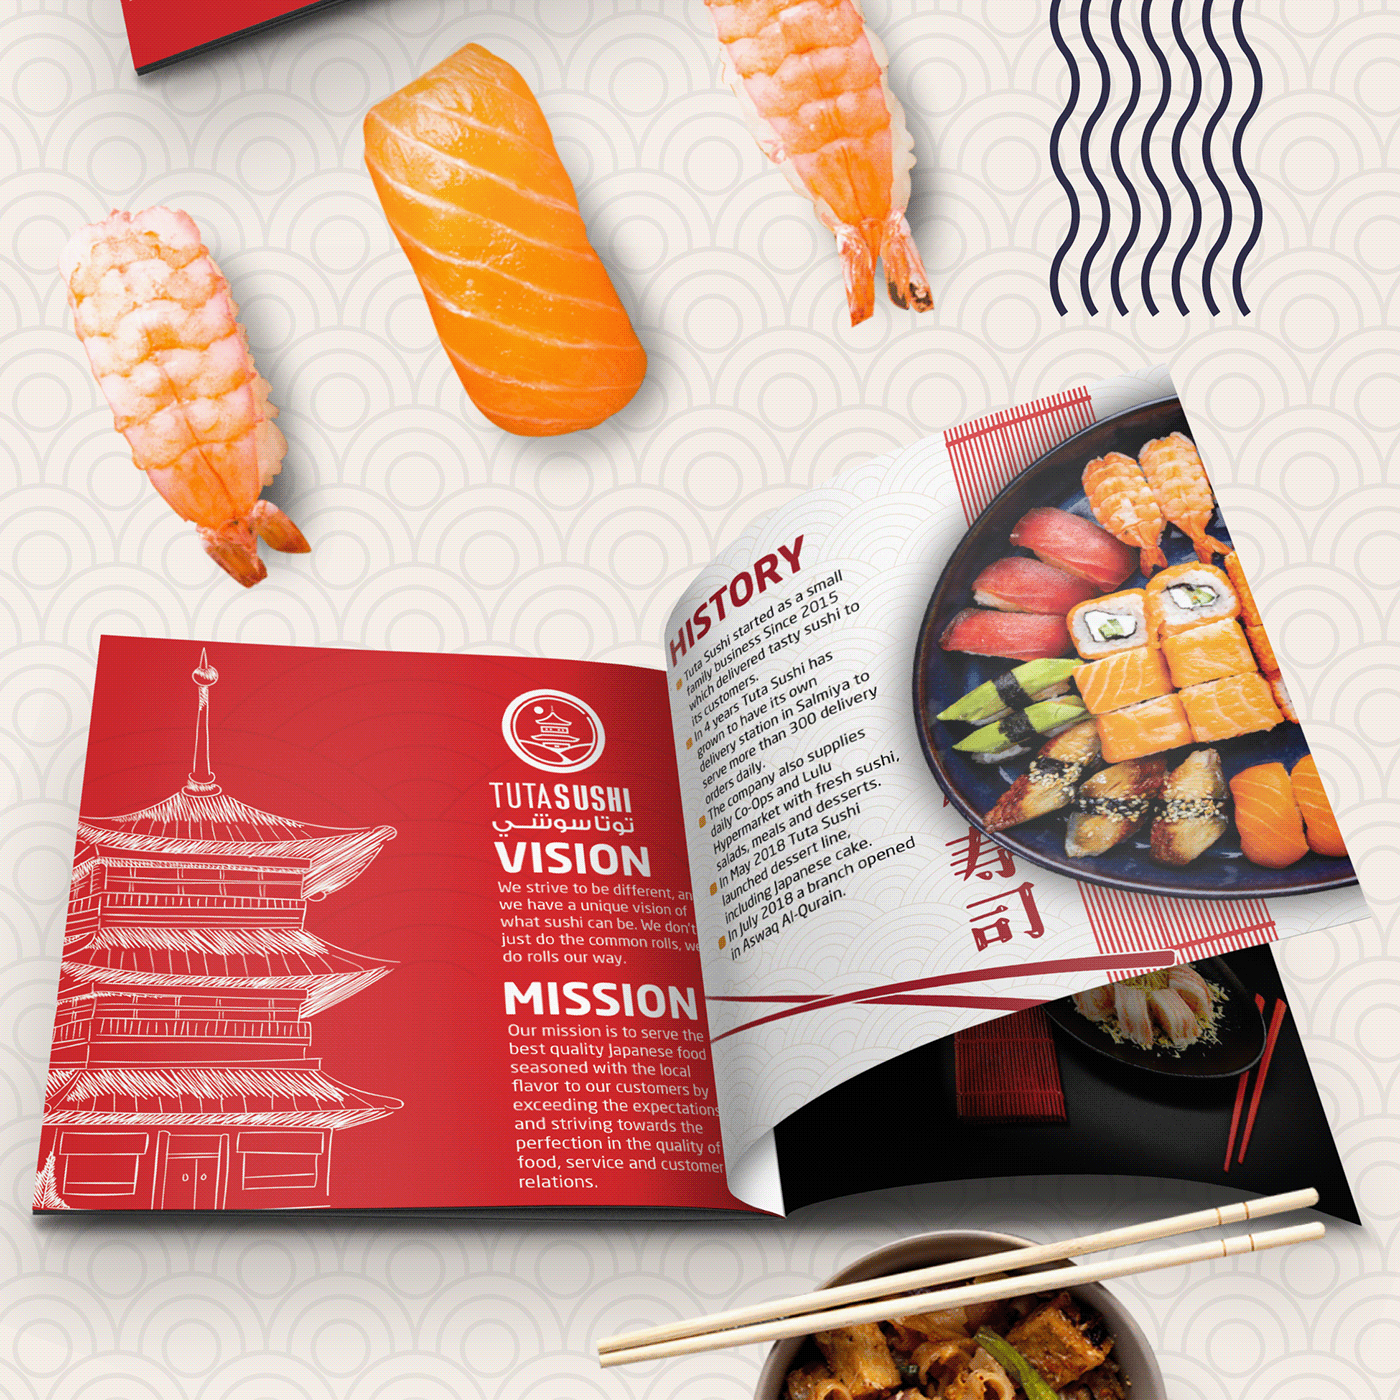 Sushi japan Kuwait profile company brand identity design Food  restaurant marketing  